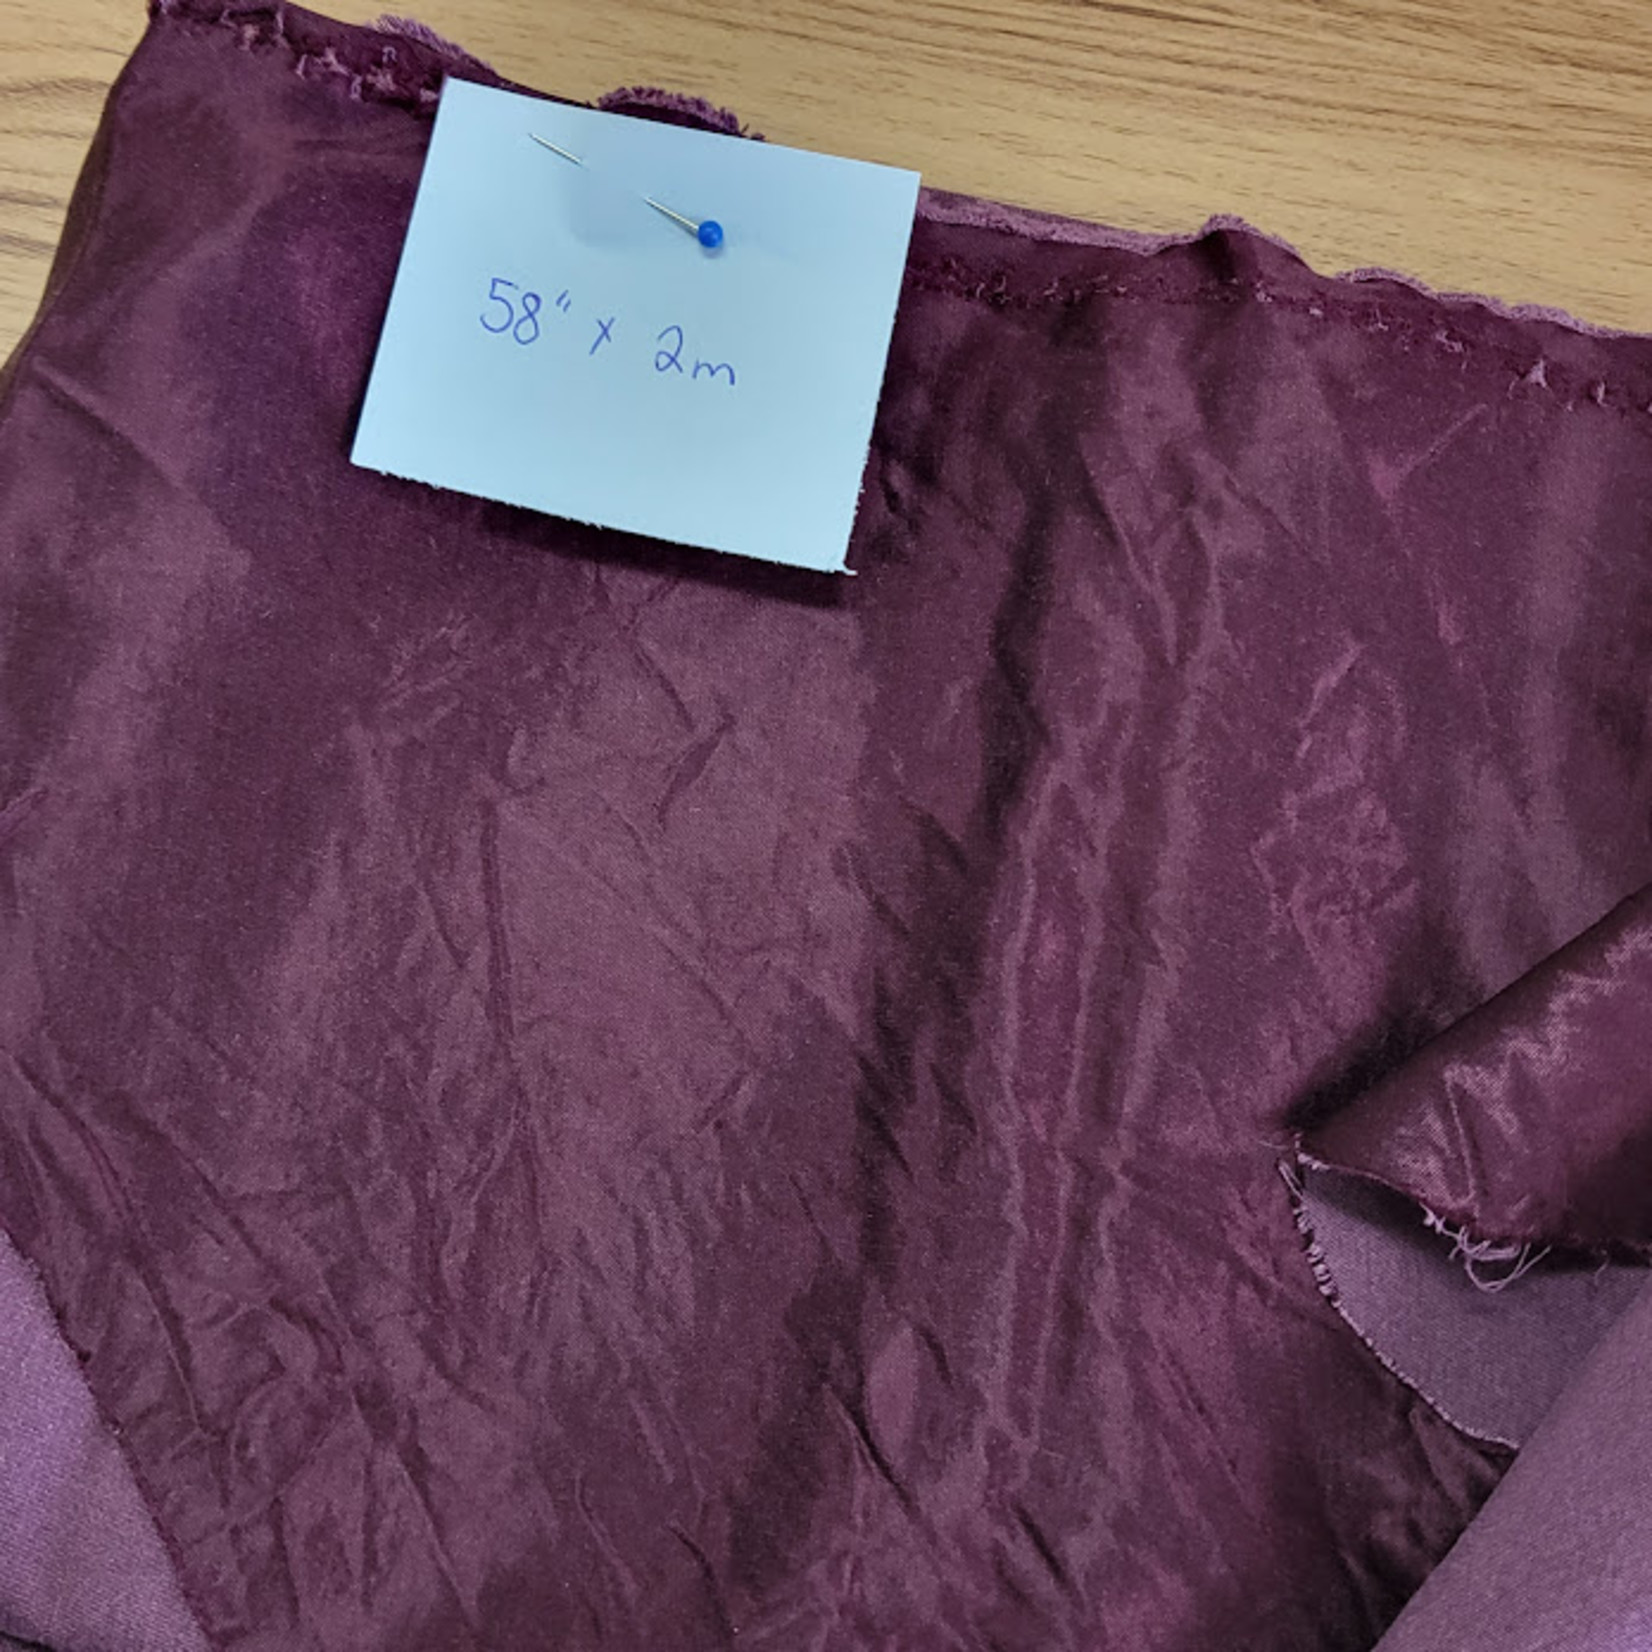 Satin Fabric - Purple (58" x 2m)